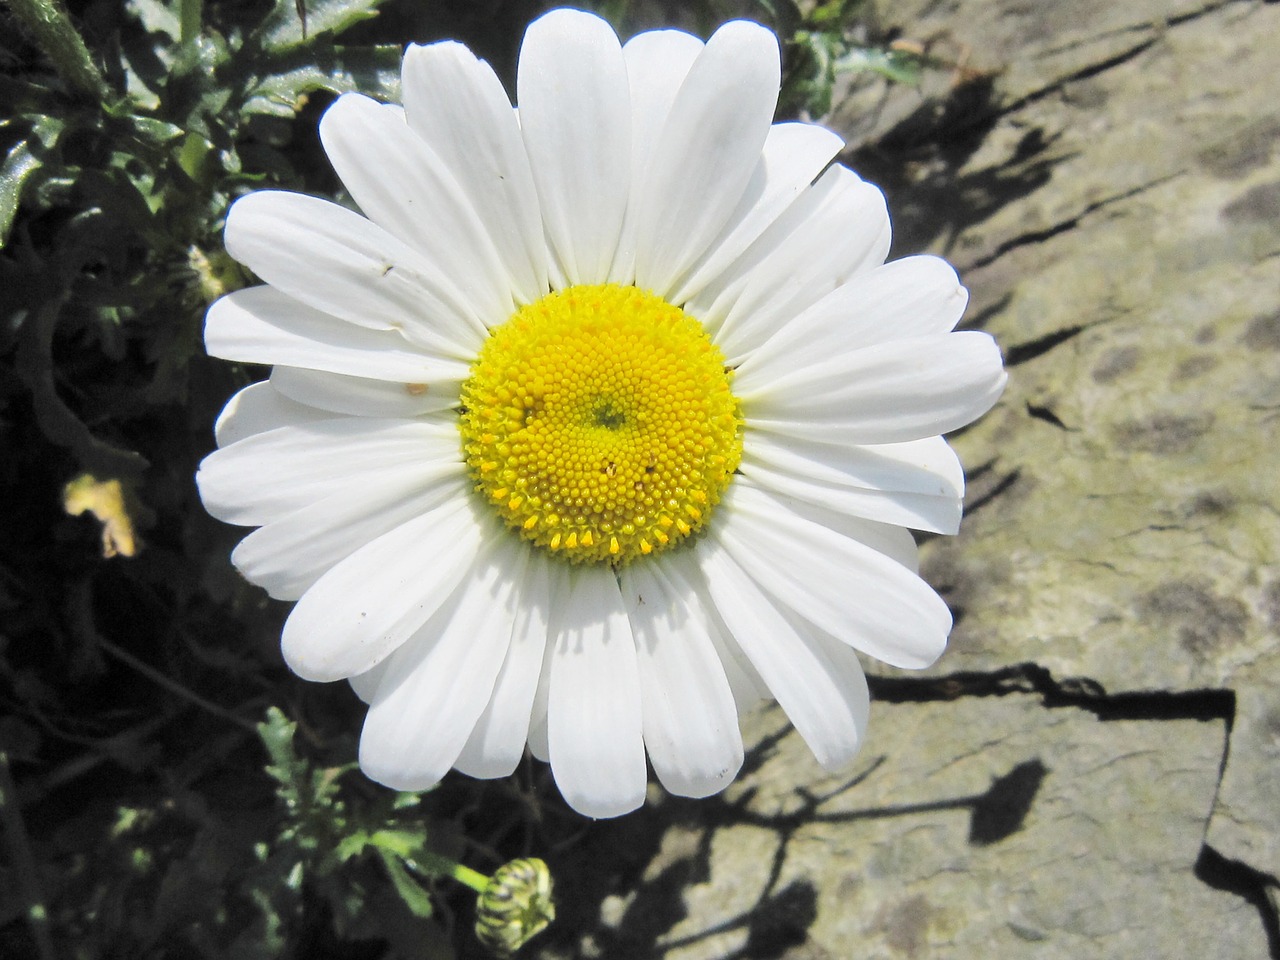 smiley daisy happy free photo